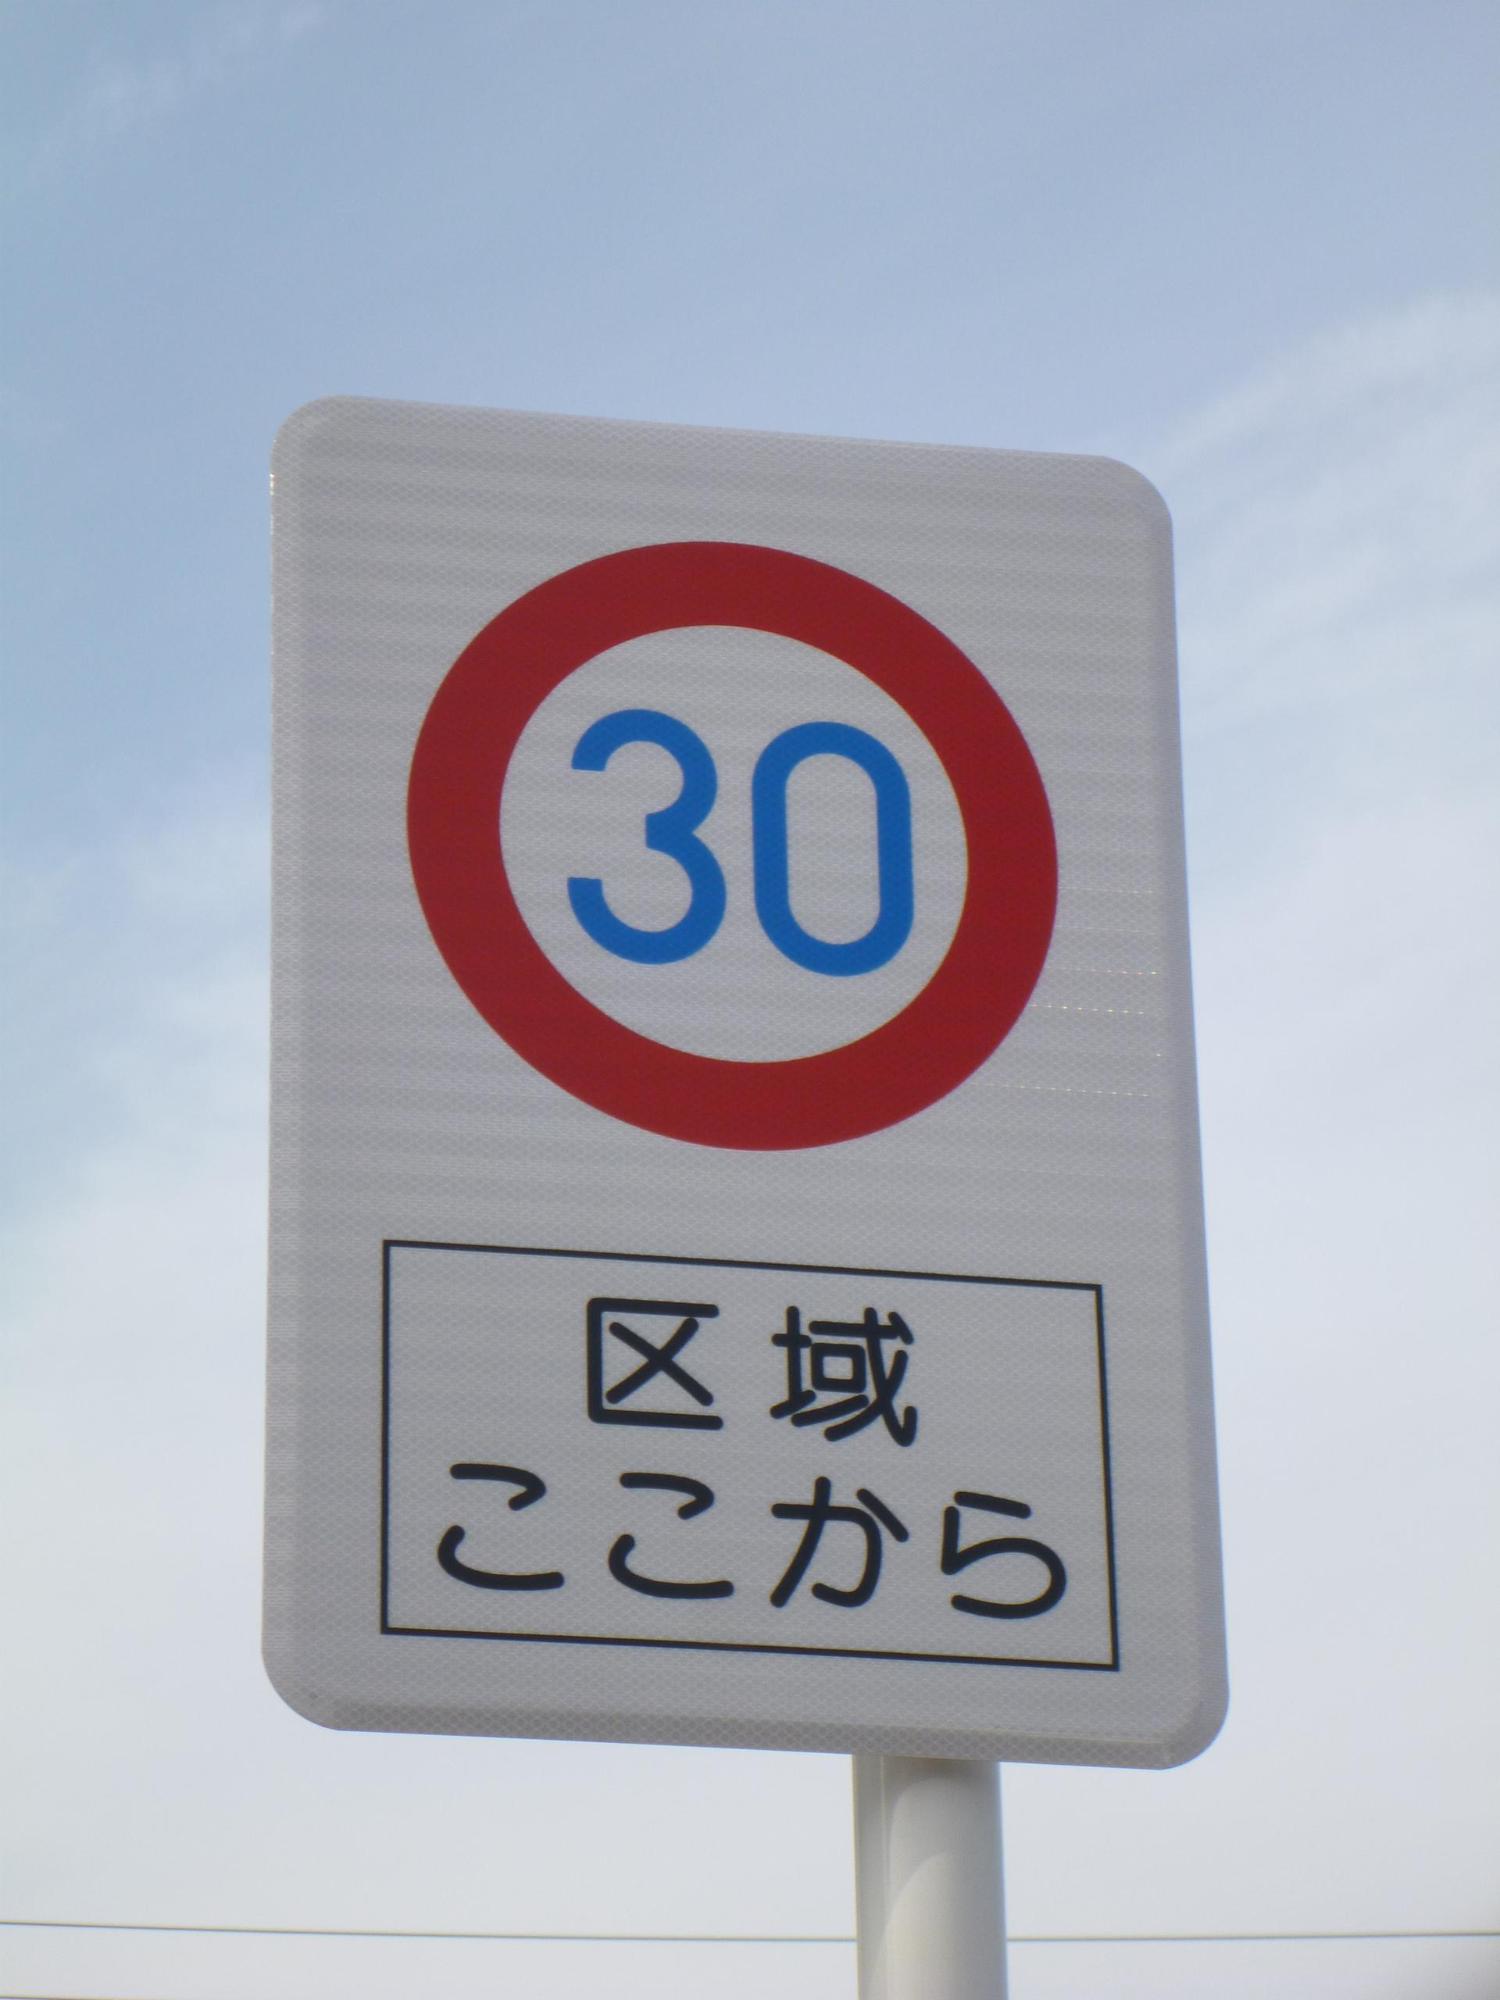 ここからの区域最高速度30キロメートルと表示された道路標識の写真